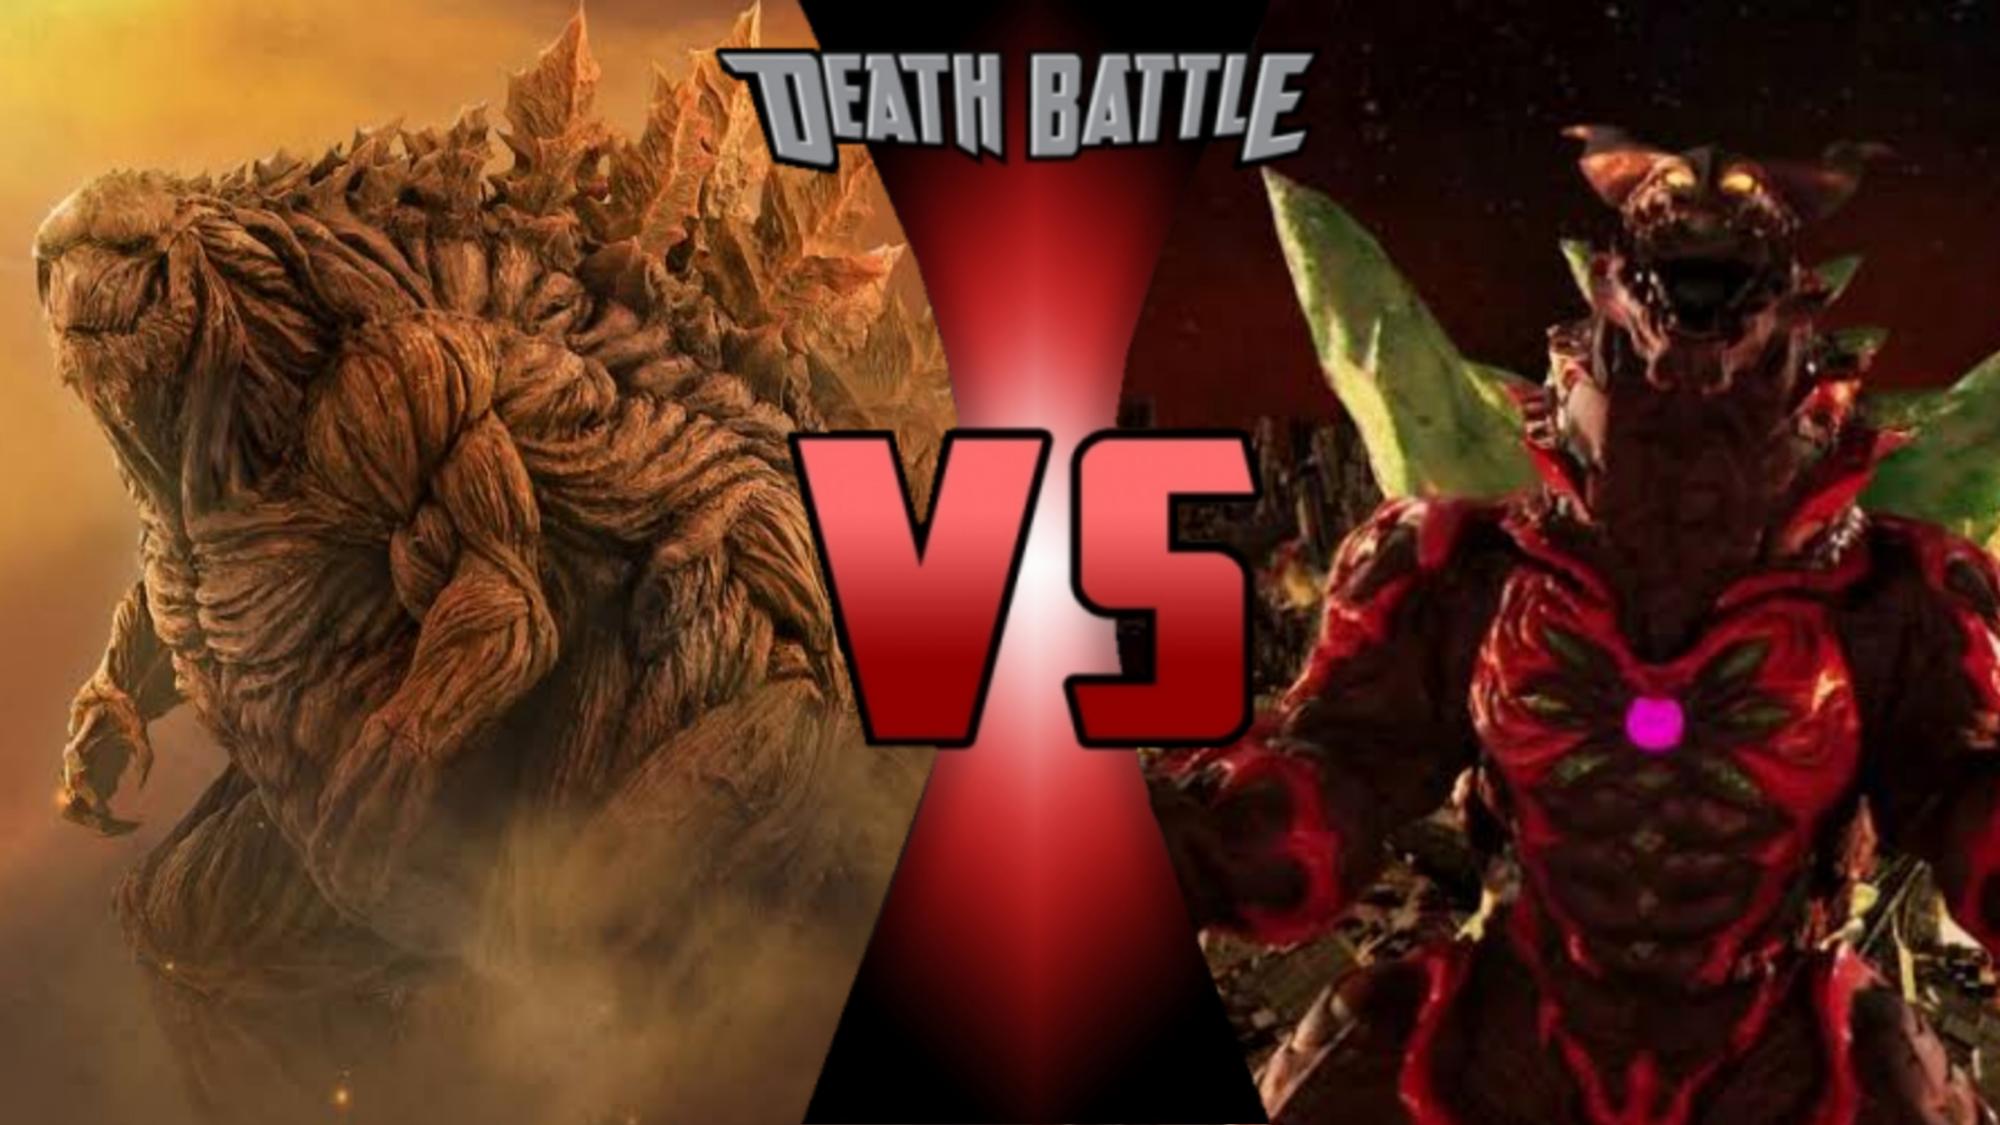 Godzilla earth vs Ultraman max : r/GODZILLA